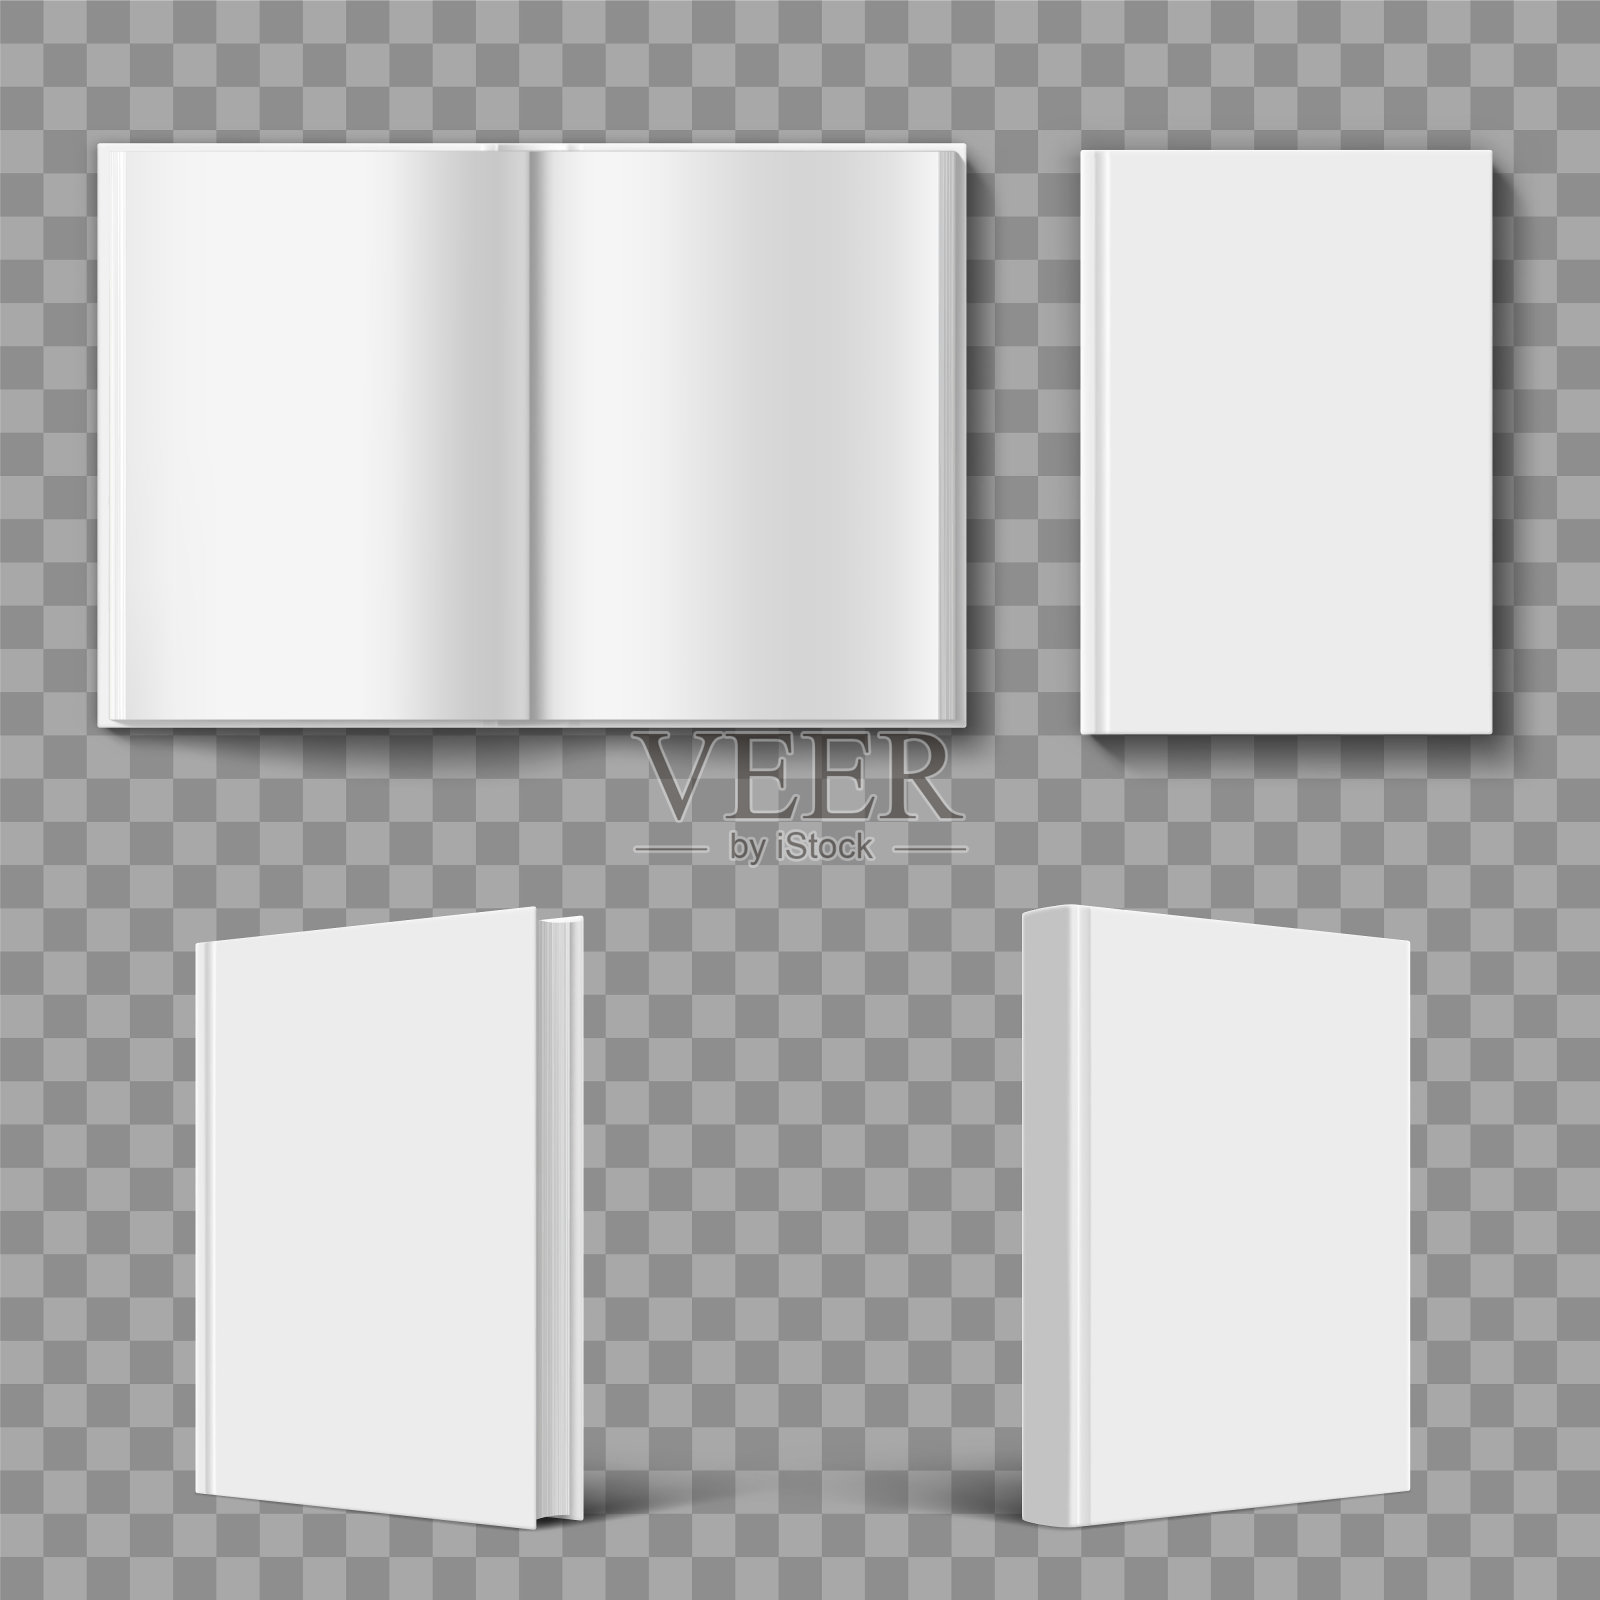 一套空白书封面模板。设计模板素材